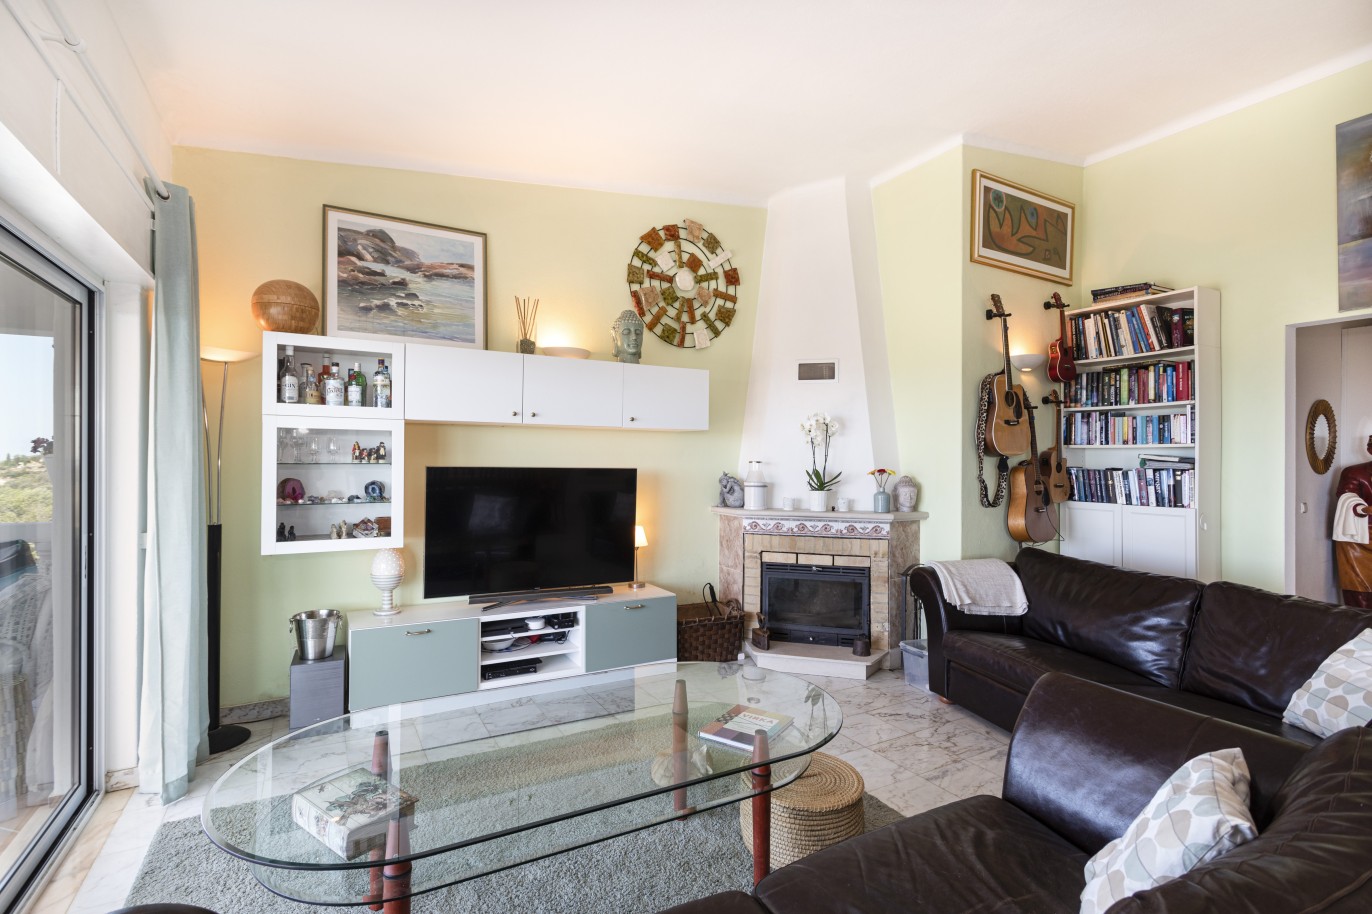 5 bedroom villa with pool and sea view, for sale in Estoi, Algarve_230468